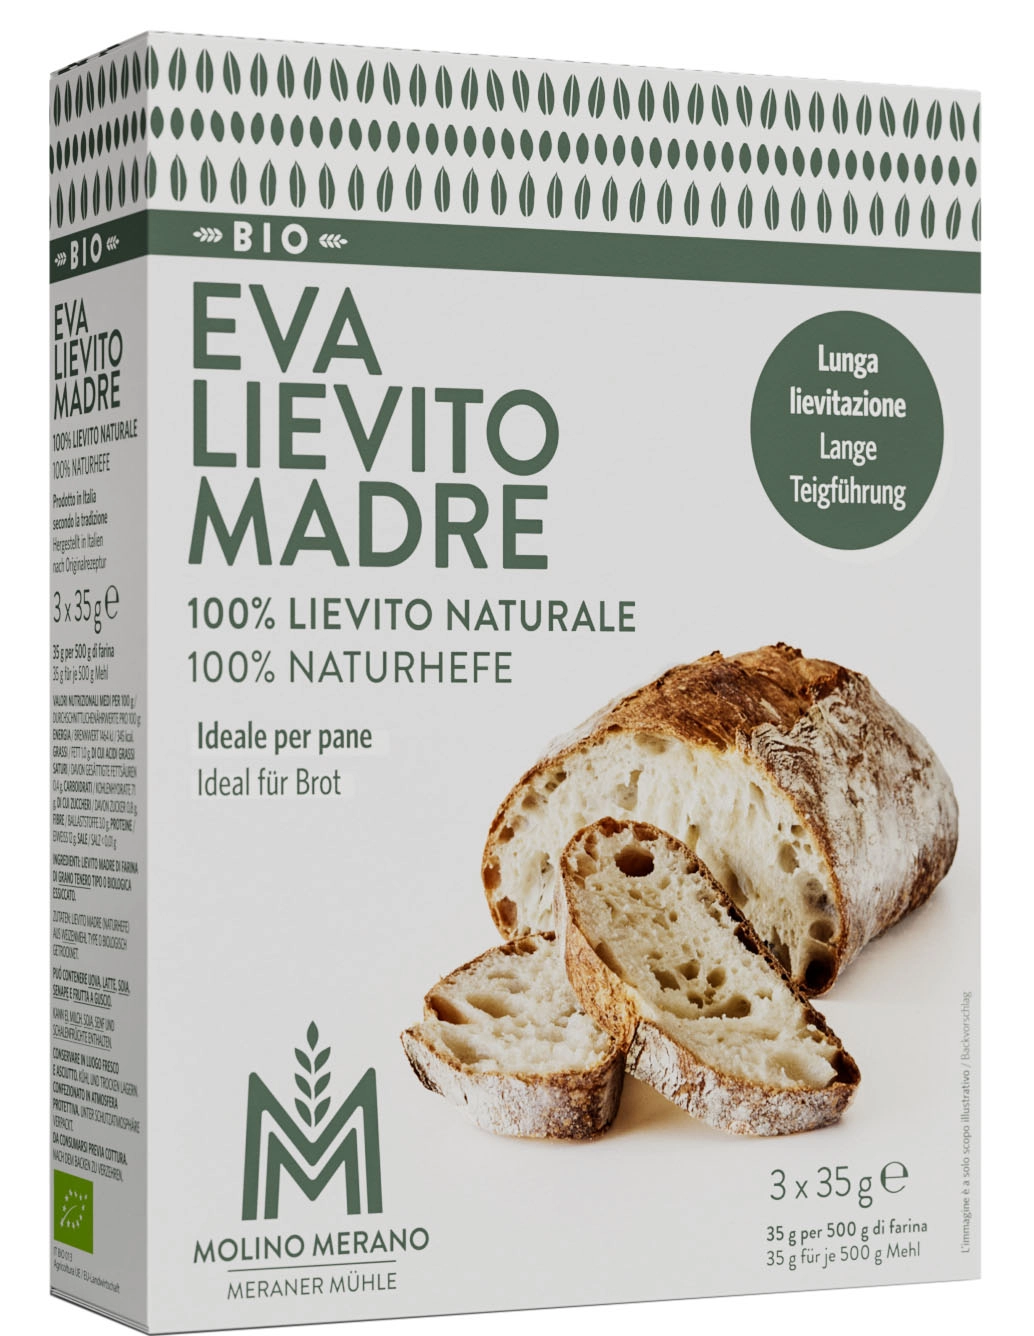 EVA - lievito madre natural yeast bio